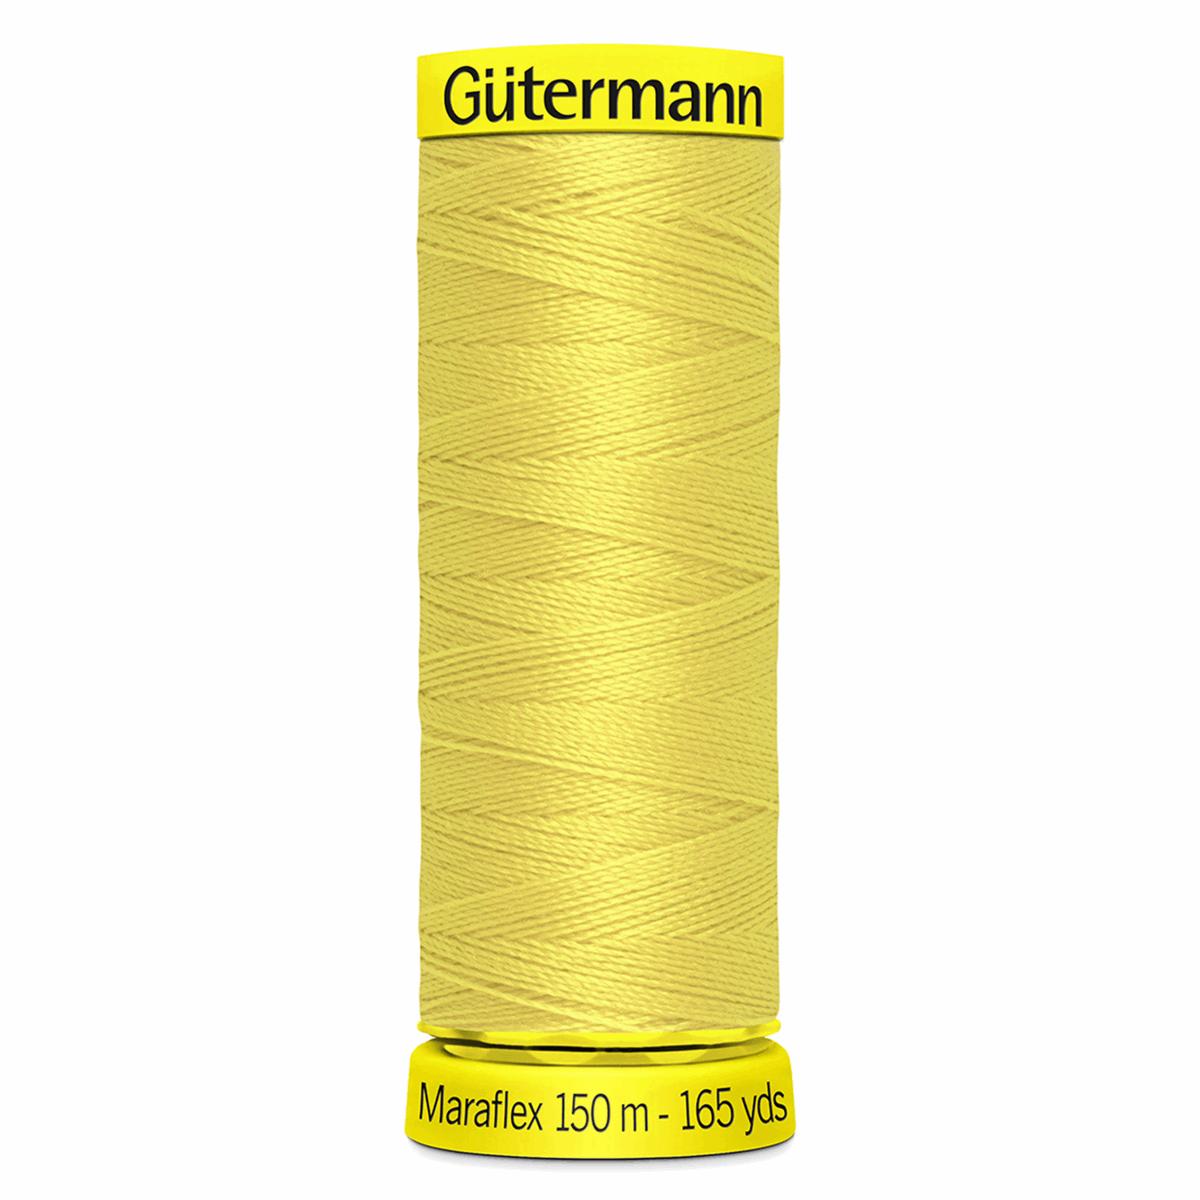 Gutermann Maraflex Elastic Sewing Thread 150m Yellow 580